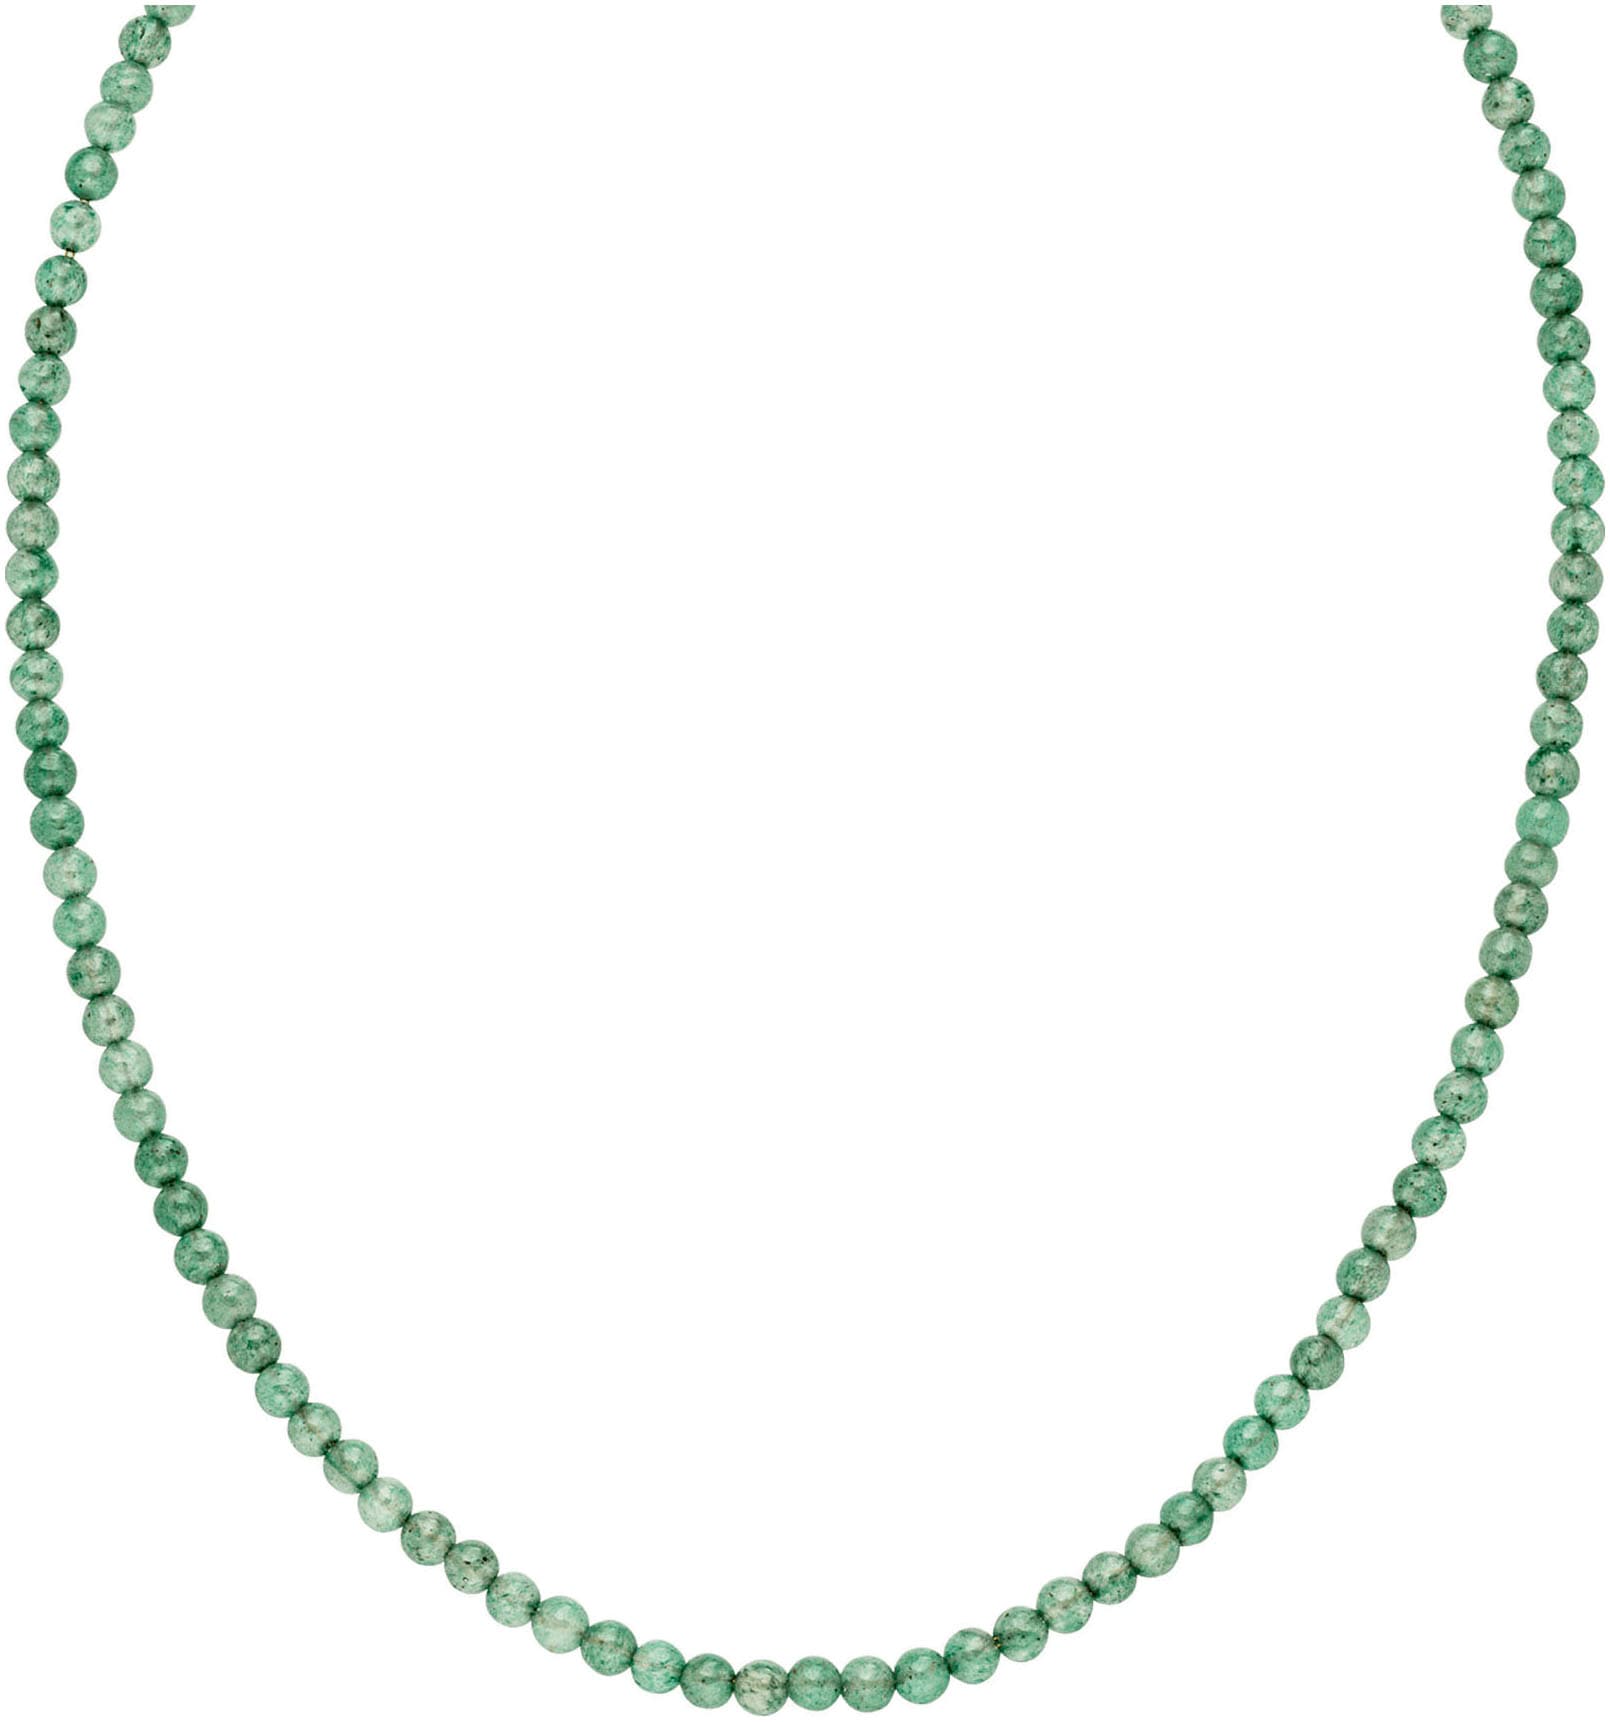 Purelei Perlenkette »Schmuck Geschenk Edelstein, 23381«, mit Amethyst oder Aventurin